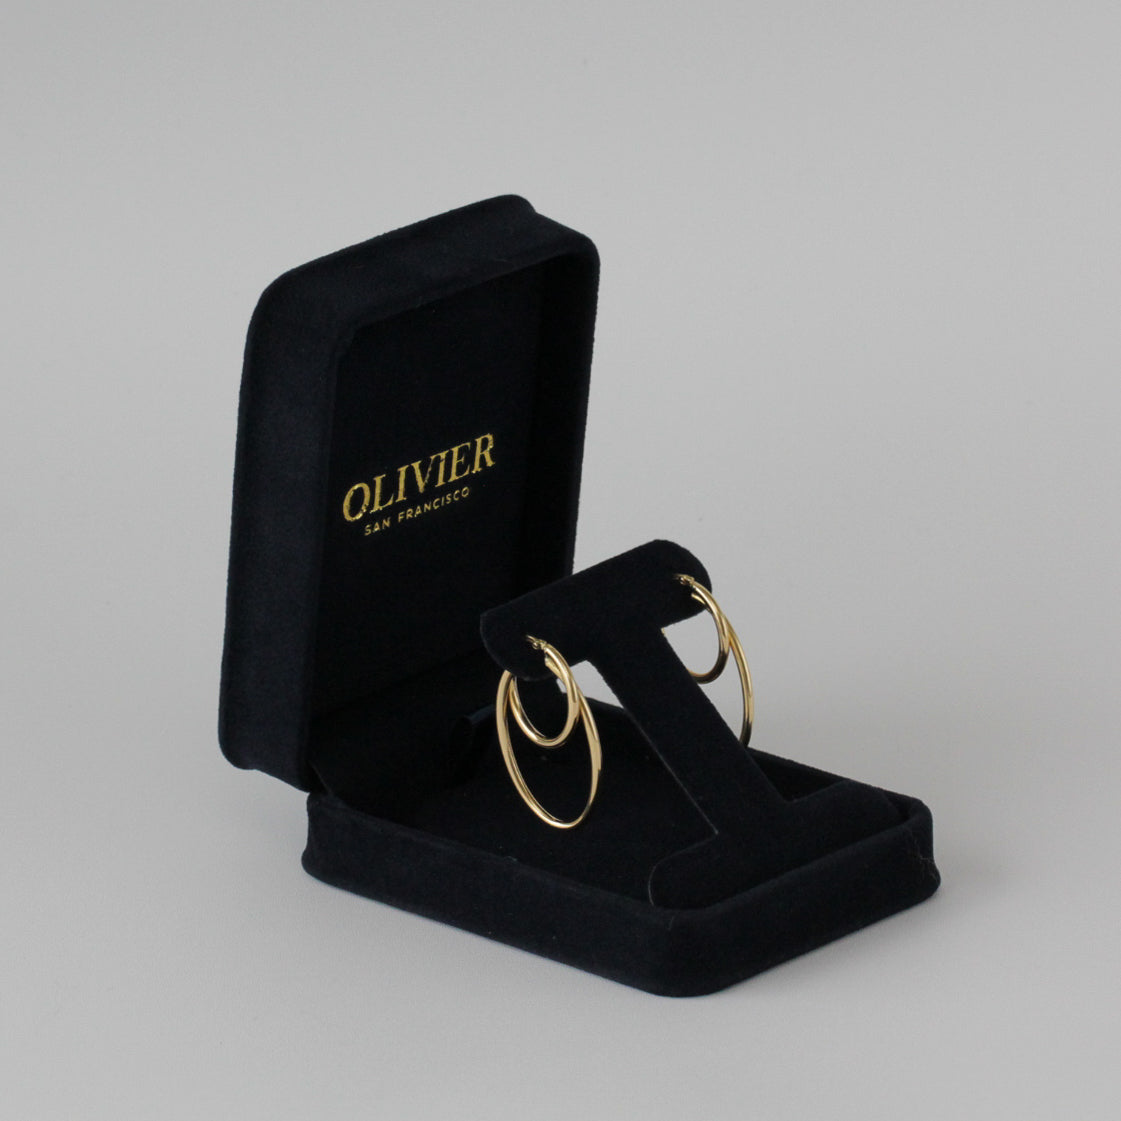 gold doubles hoops earrings in box